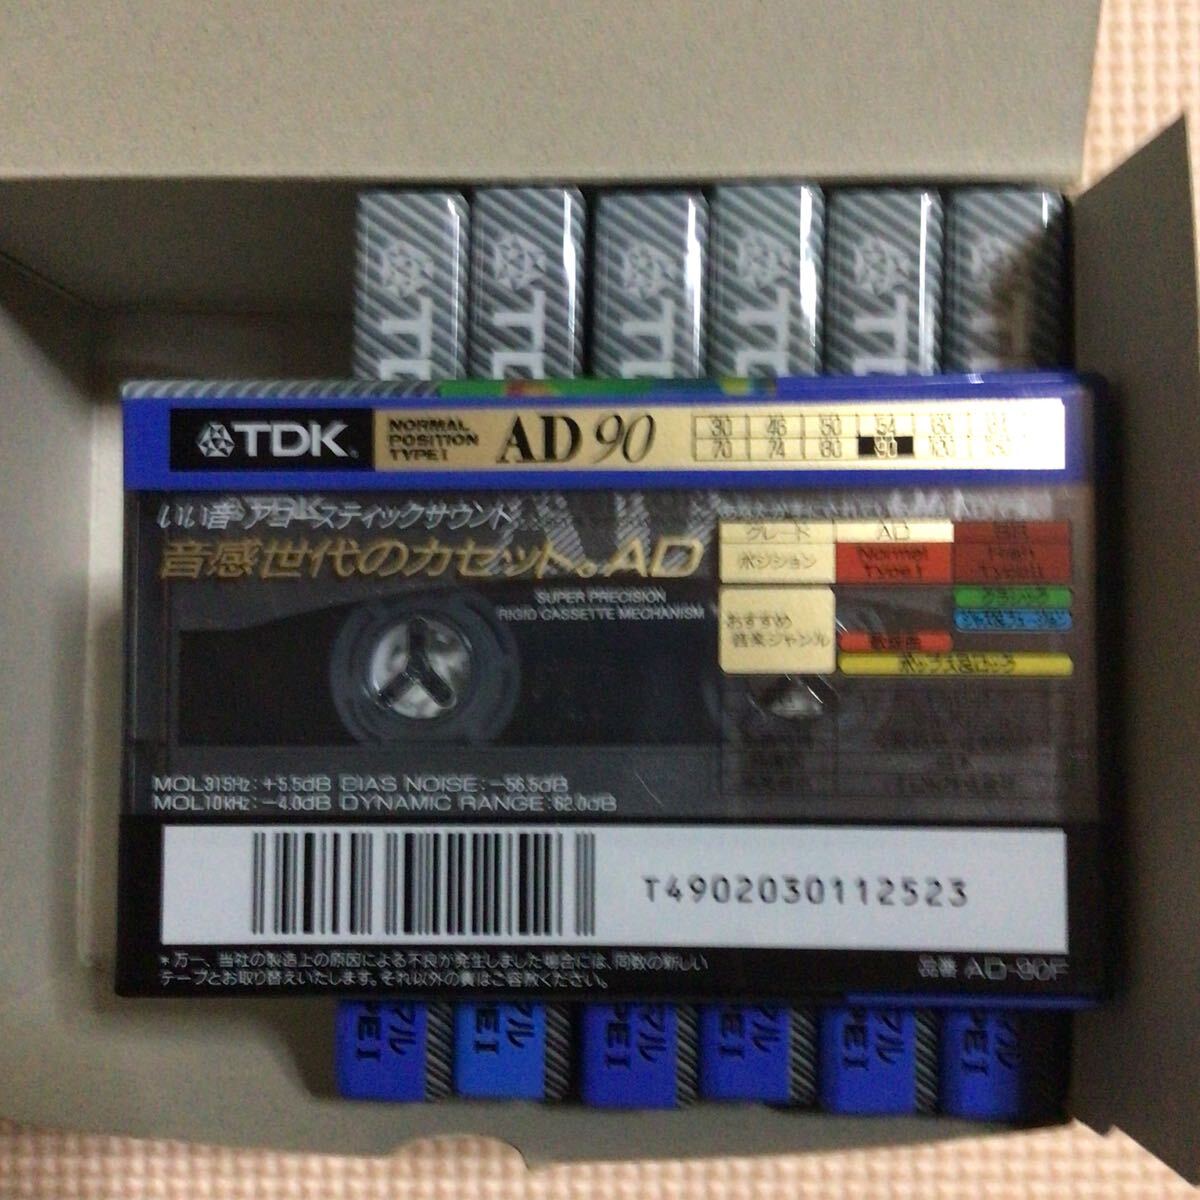 TDK AD 90 ノーマルポジション カセットテープ7本セット【未開封新品】★の画像3